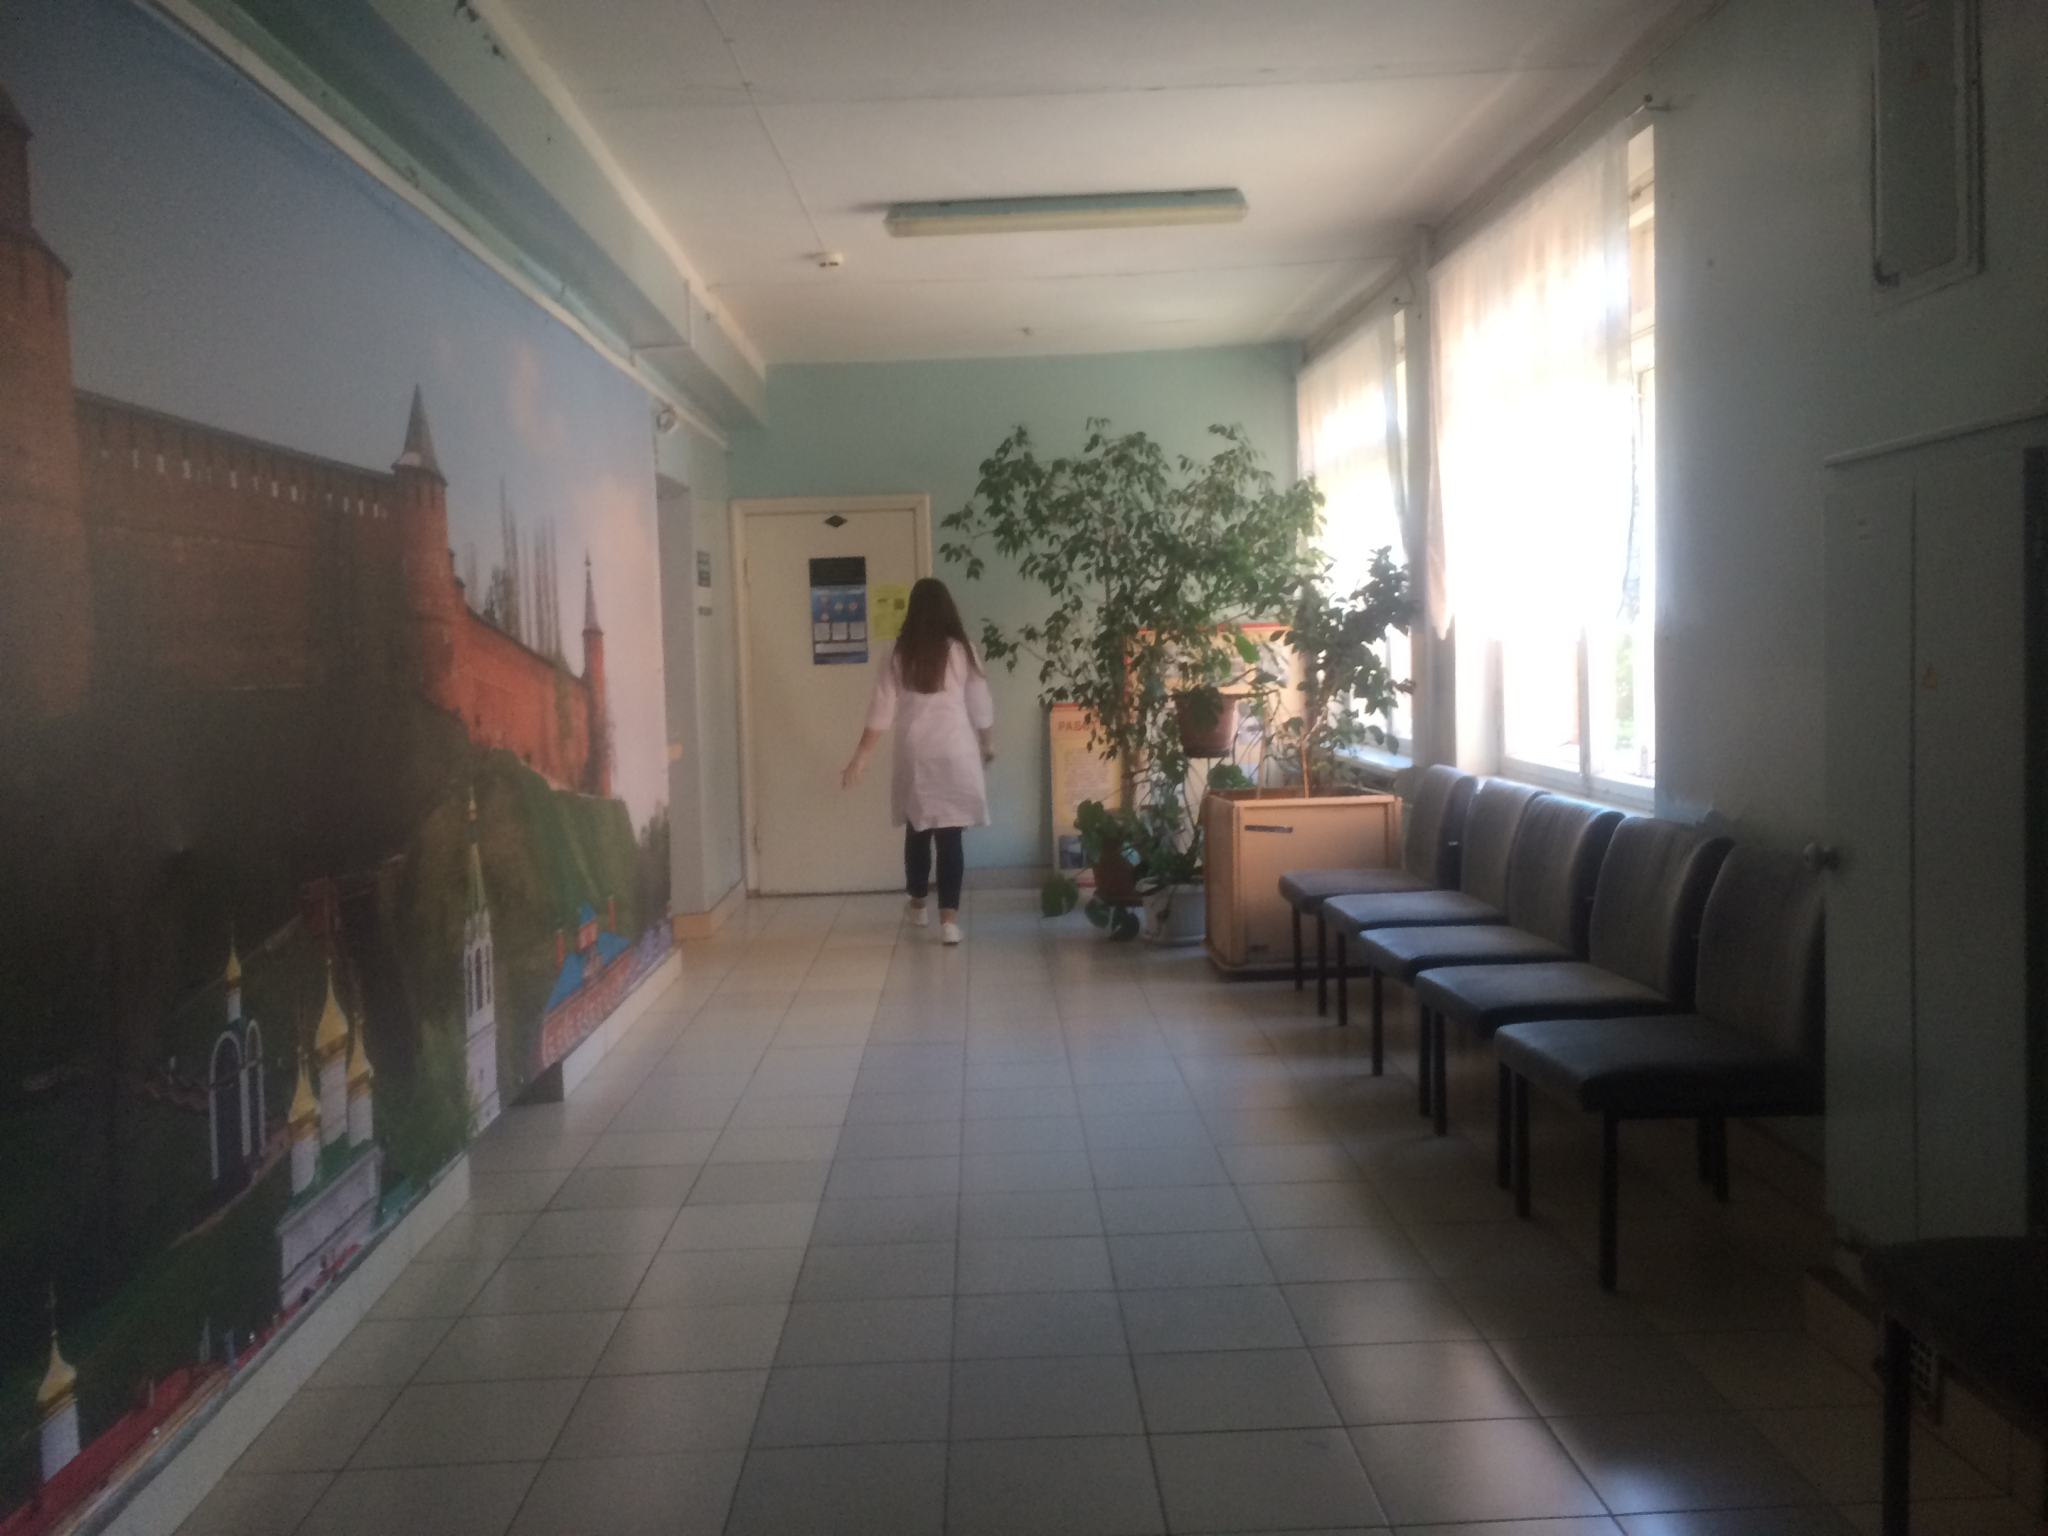 Еще 203 человека заболели коронавирусом в Нижегородской области